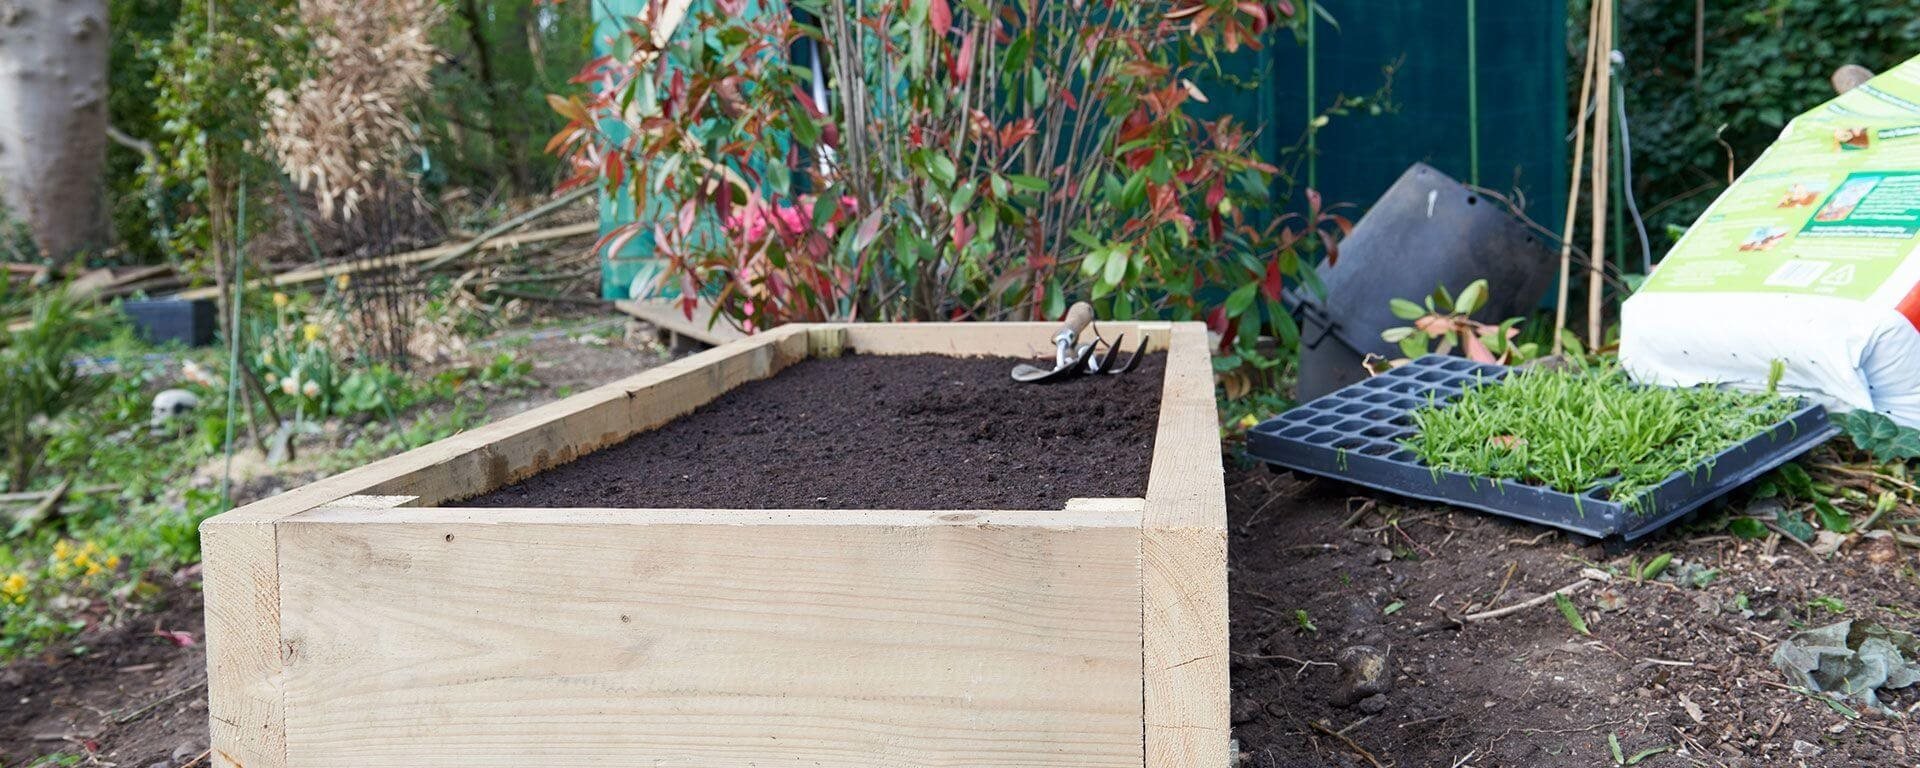 Cultiver des légumes dans un carré potager en bois